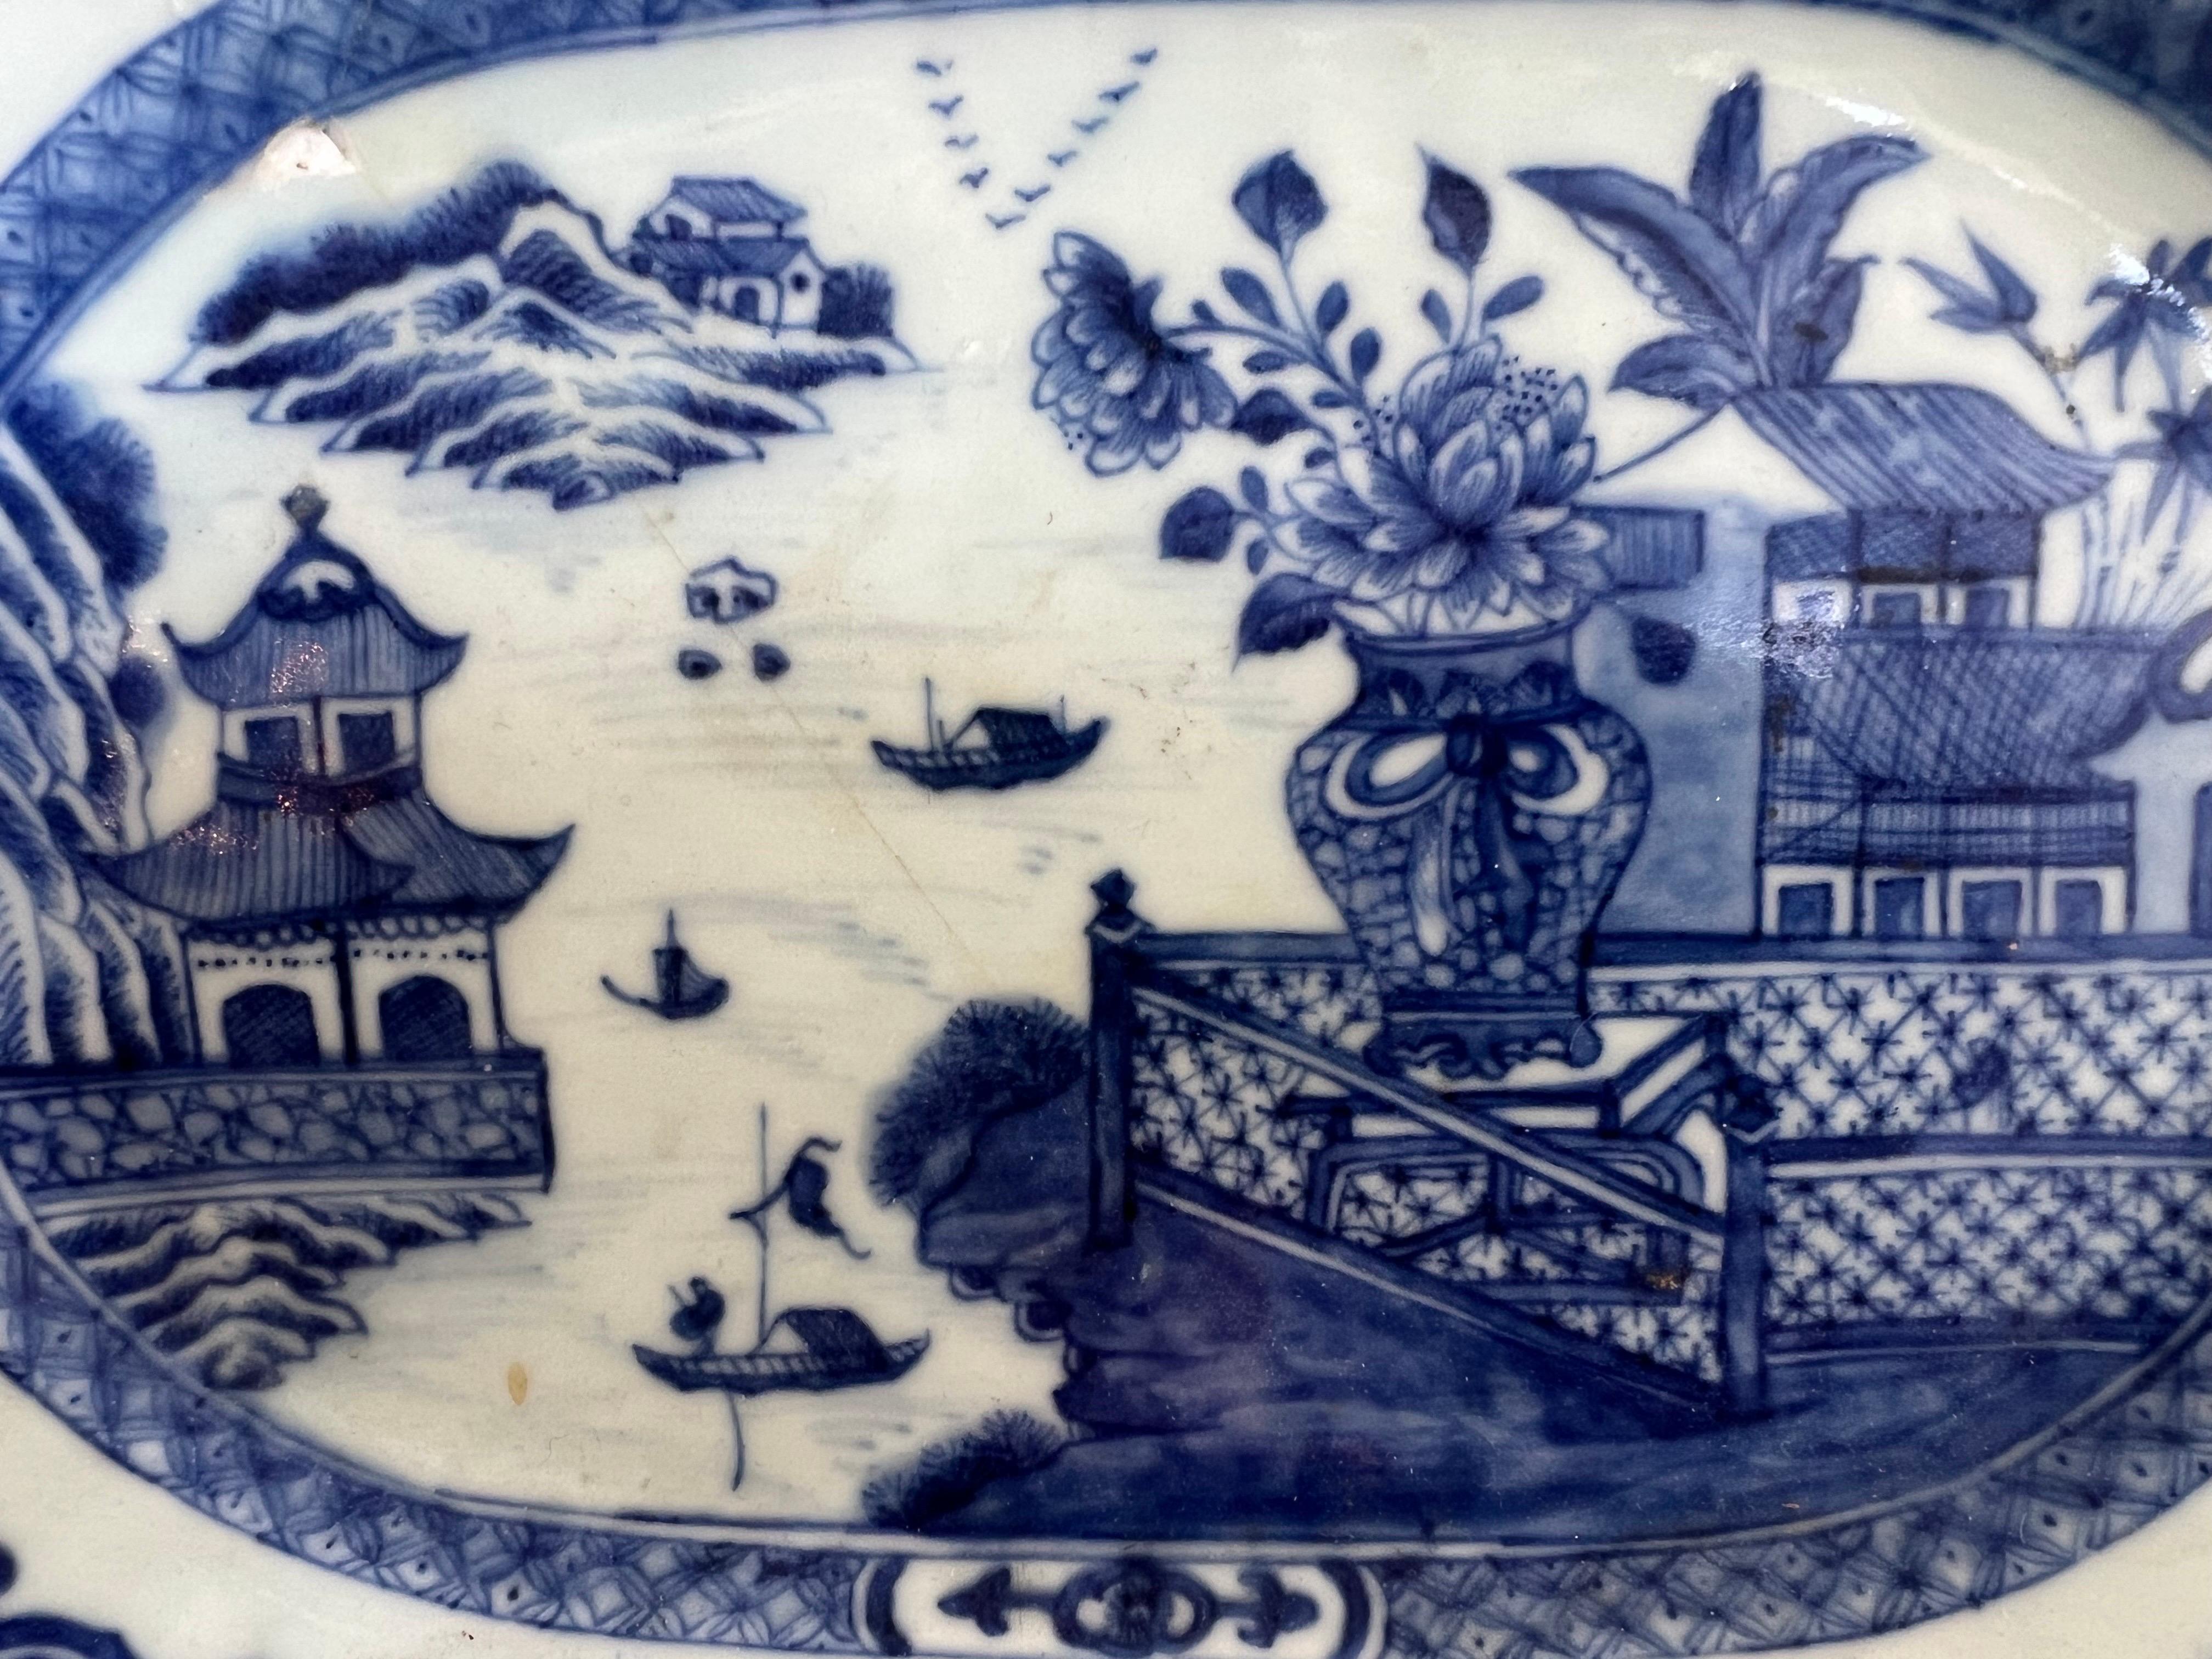 Ein achteckiger chinesischer Exportteller aus dem 18. Jahrhundert mit einem fesselnden blau-weißen Muster.  Die kunstvollen Szenen zeigen Pagoden, Blumen, Alltagsszenen, Seen und Boote und veranschaulichen die Kunstfertigkeit der damaligen Zeit.